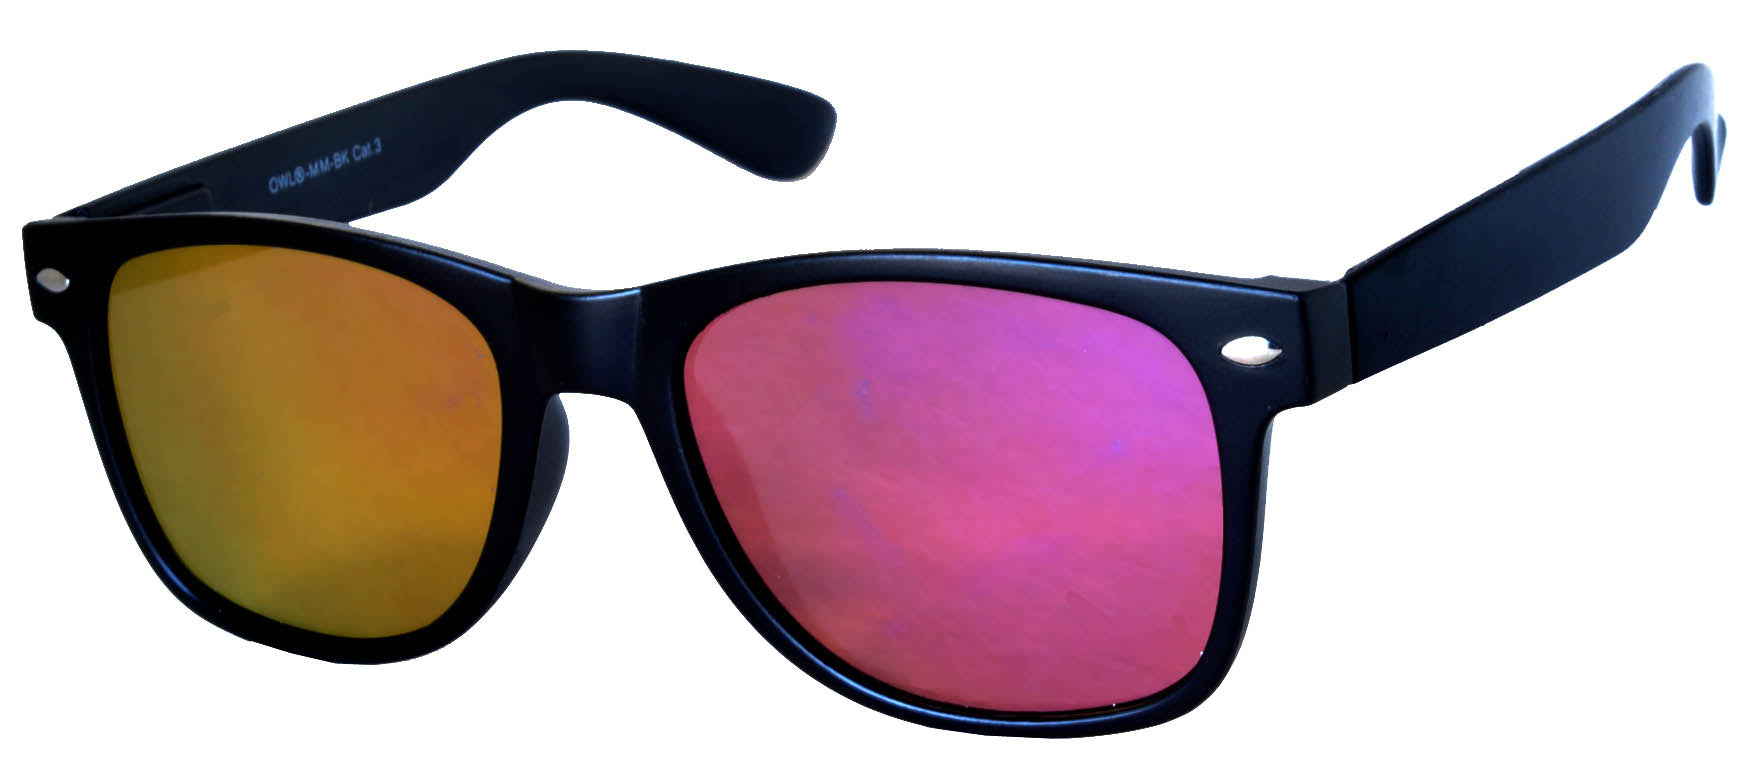 retro sunglasses black